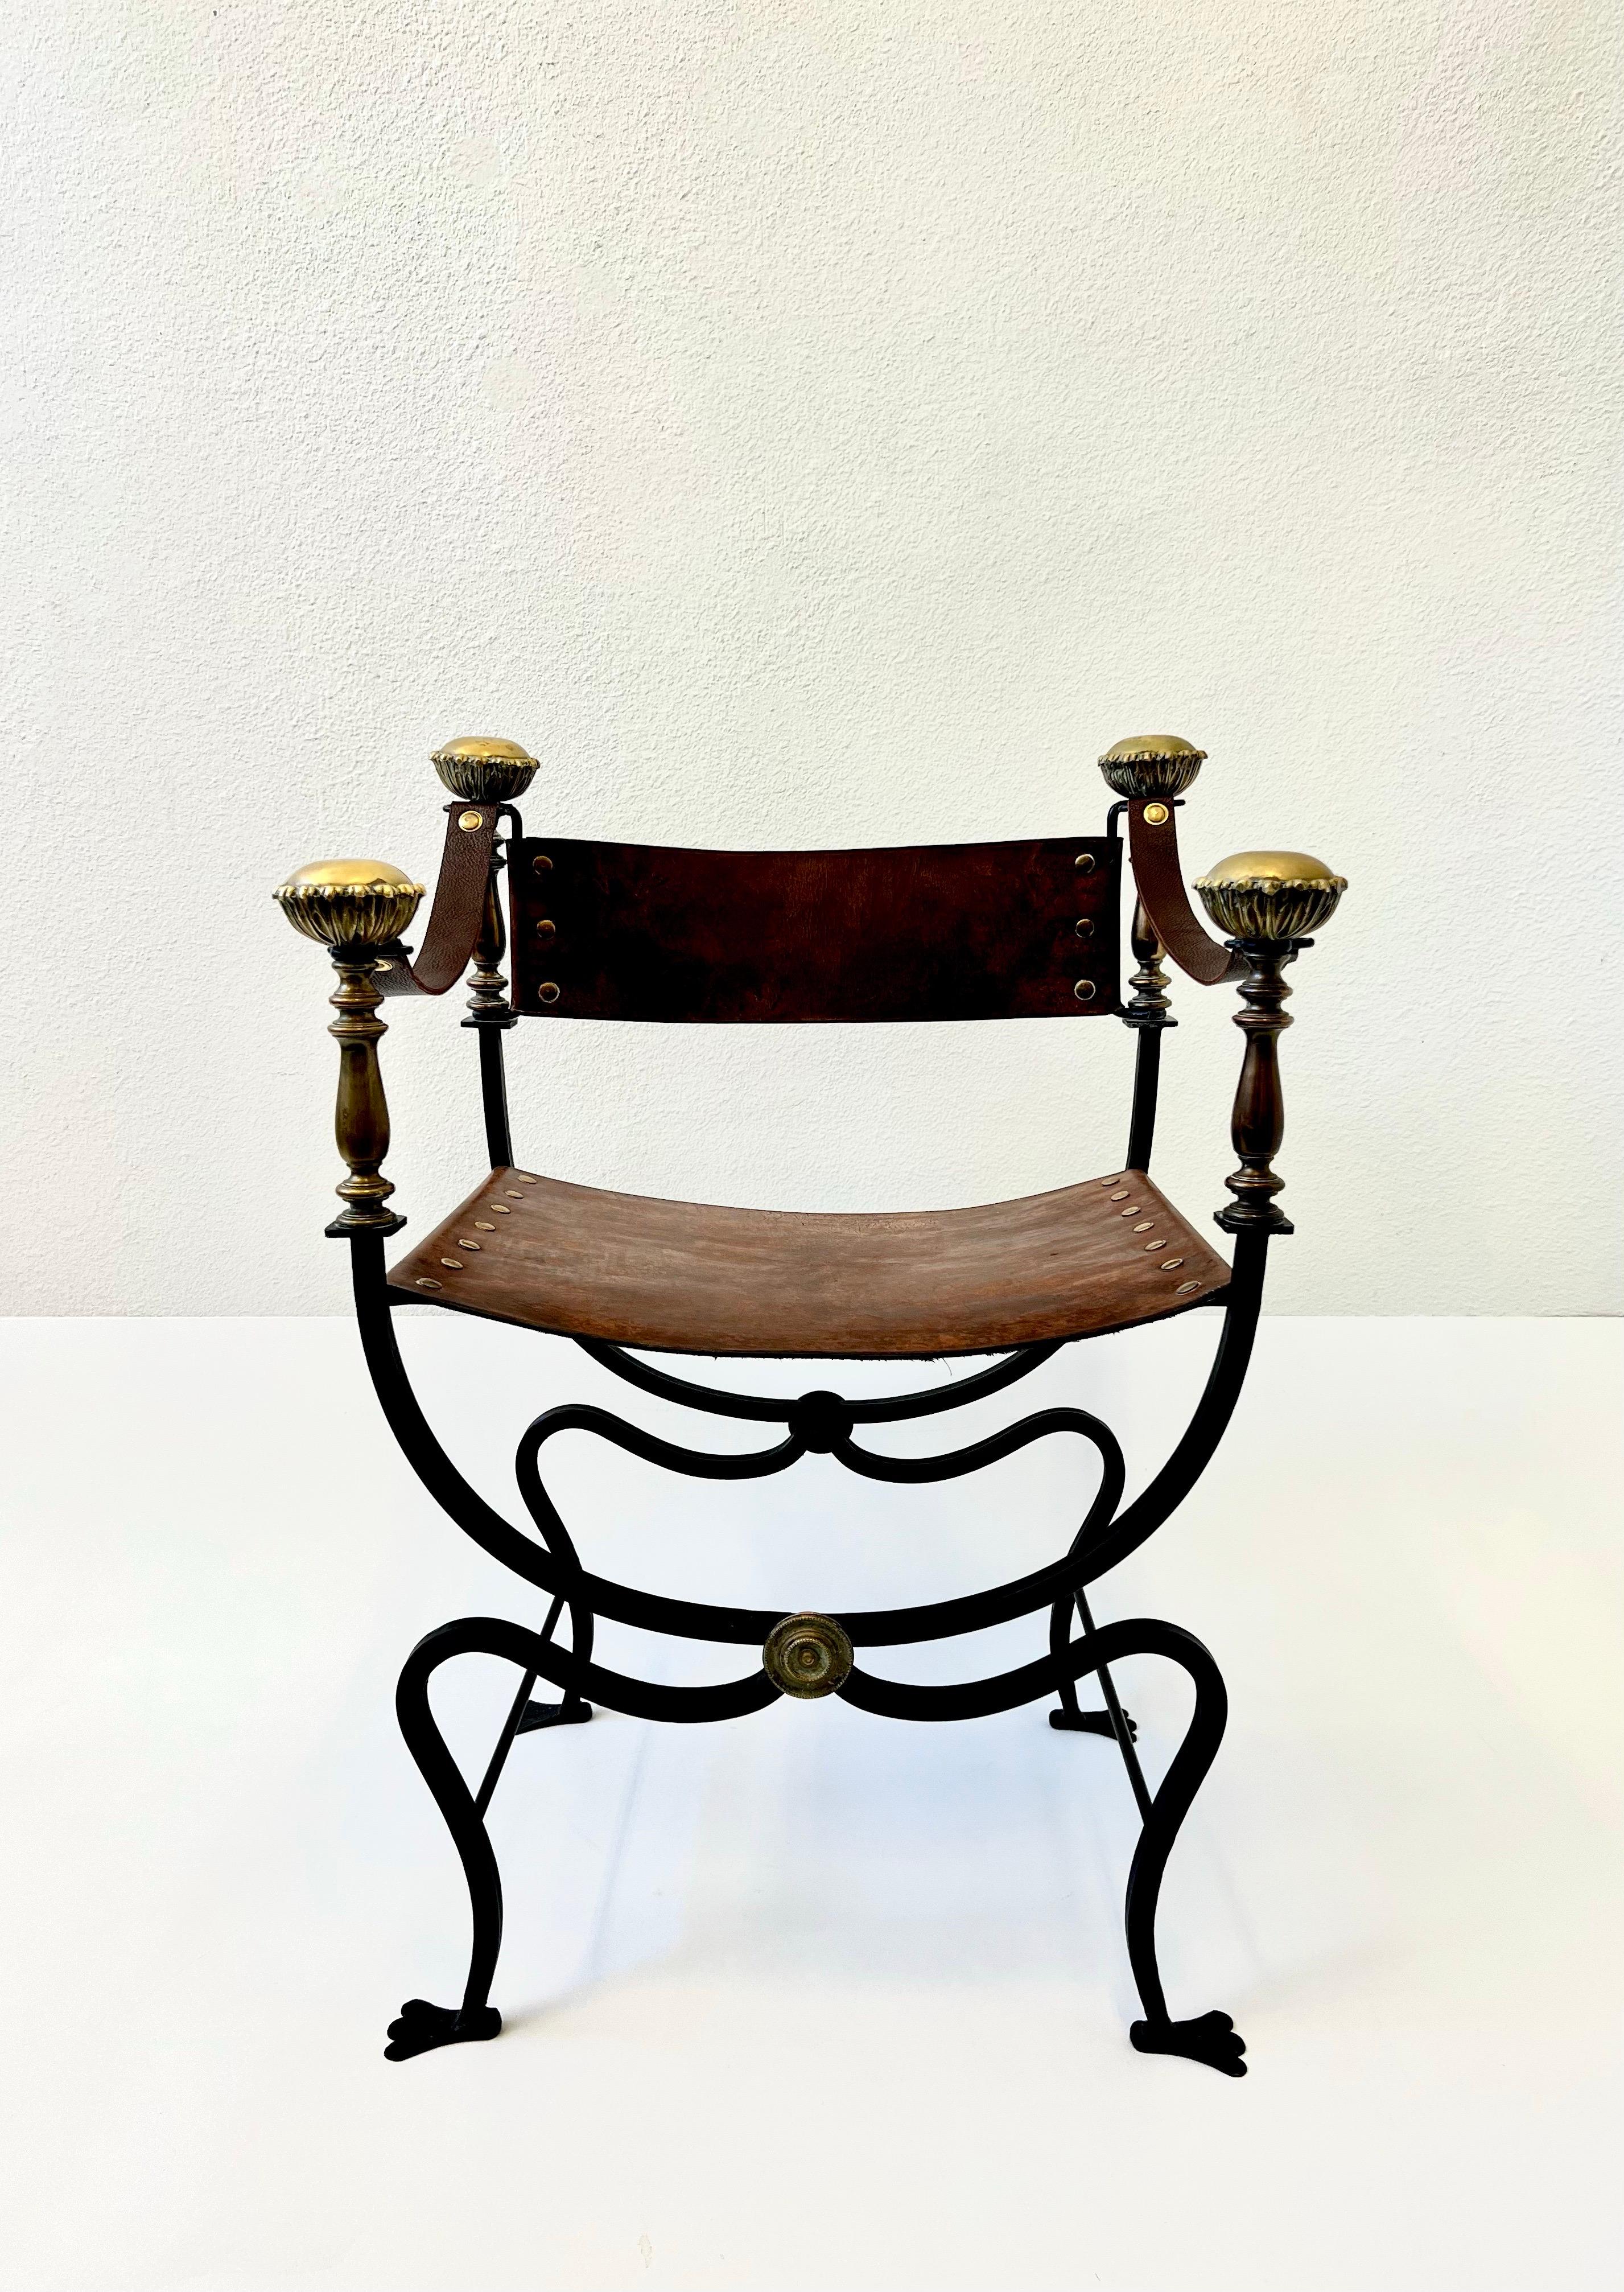 Italienischer Campaigner Stuhl aus schwarzem Eisen und Leder mit Messingdetails aus den 1960er Jahren. 

Das Gestell besteht aus schwarz lackiertem Schmiedestahl mit dekorativen Messingdetails, Sitz, Rückenlehne und Armlehnen sind aus Leder. Das